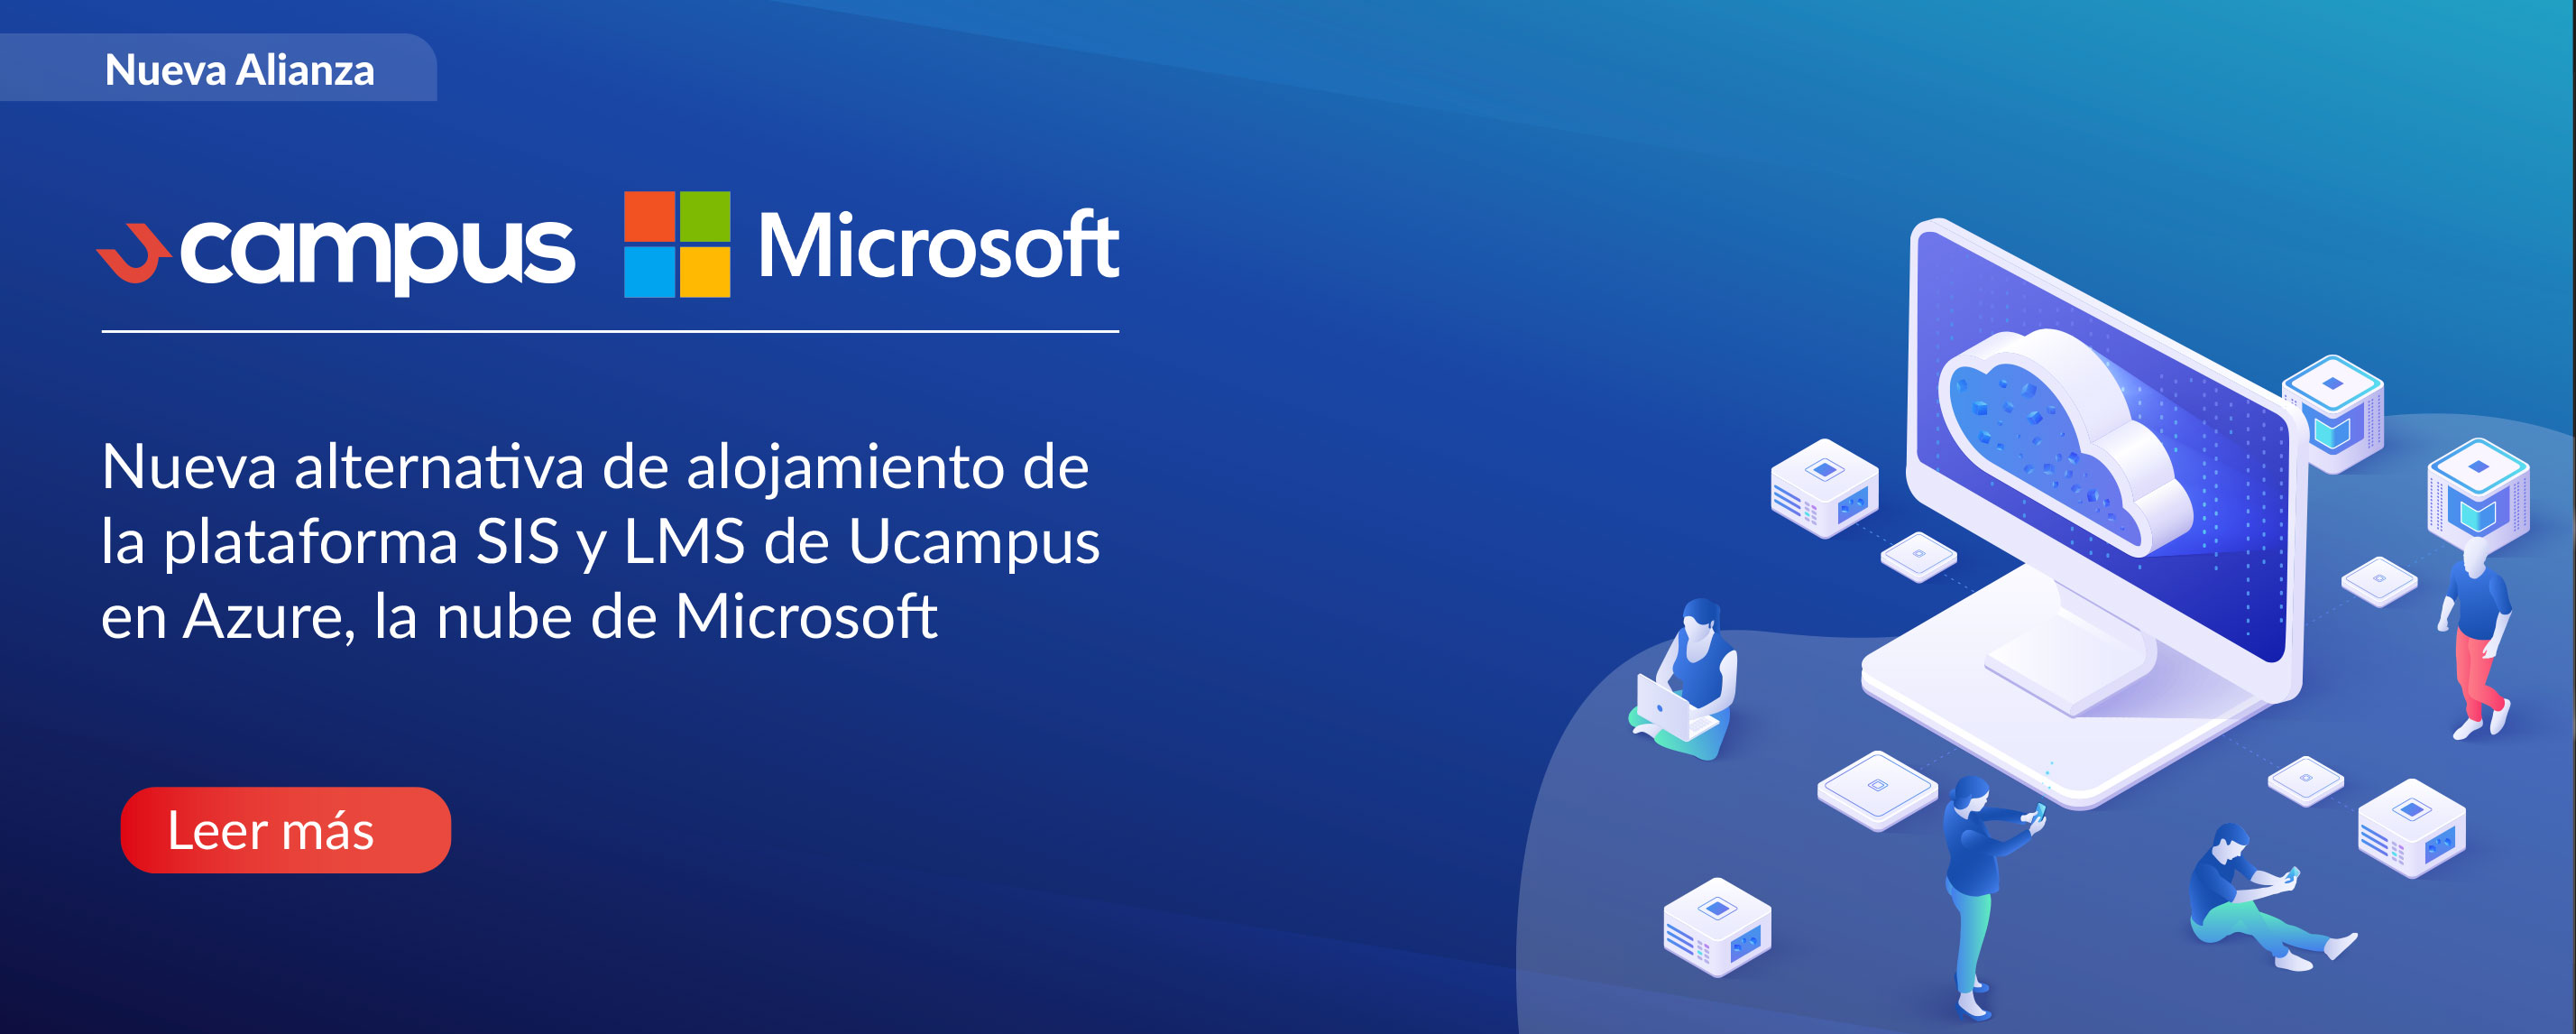 Ucampus anuncia alianza con Microsoft